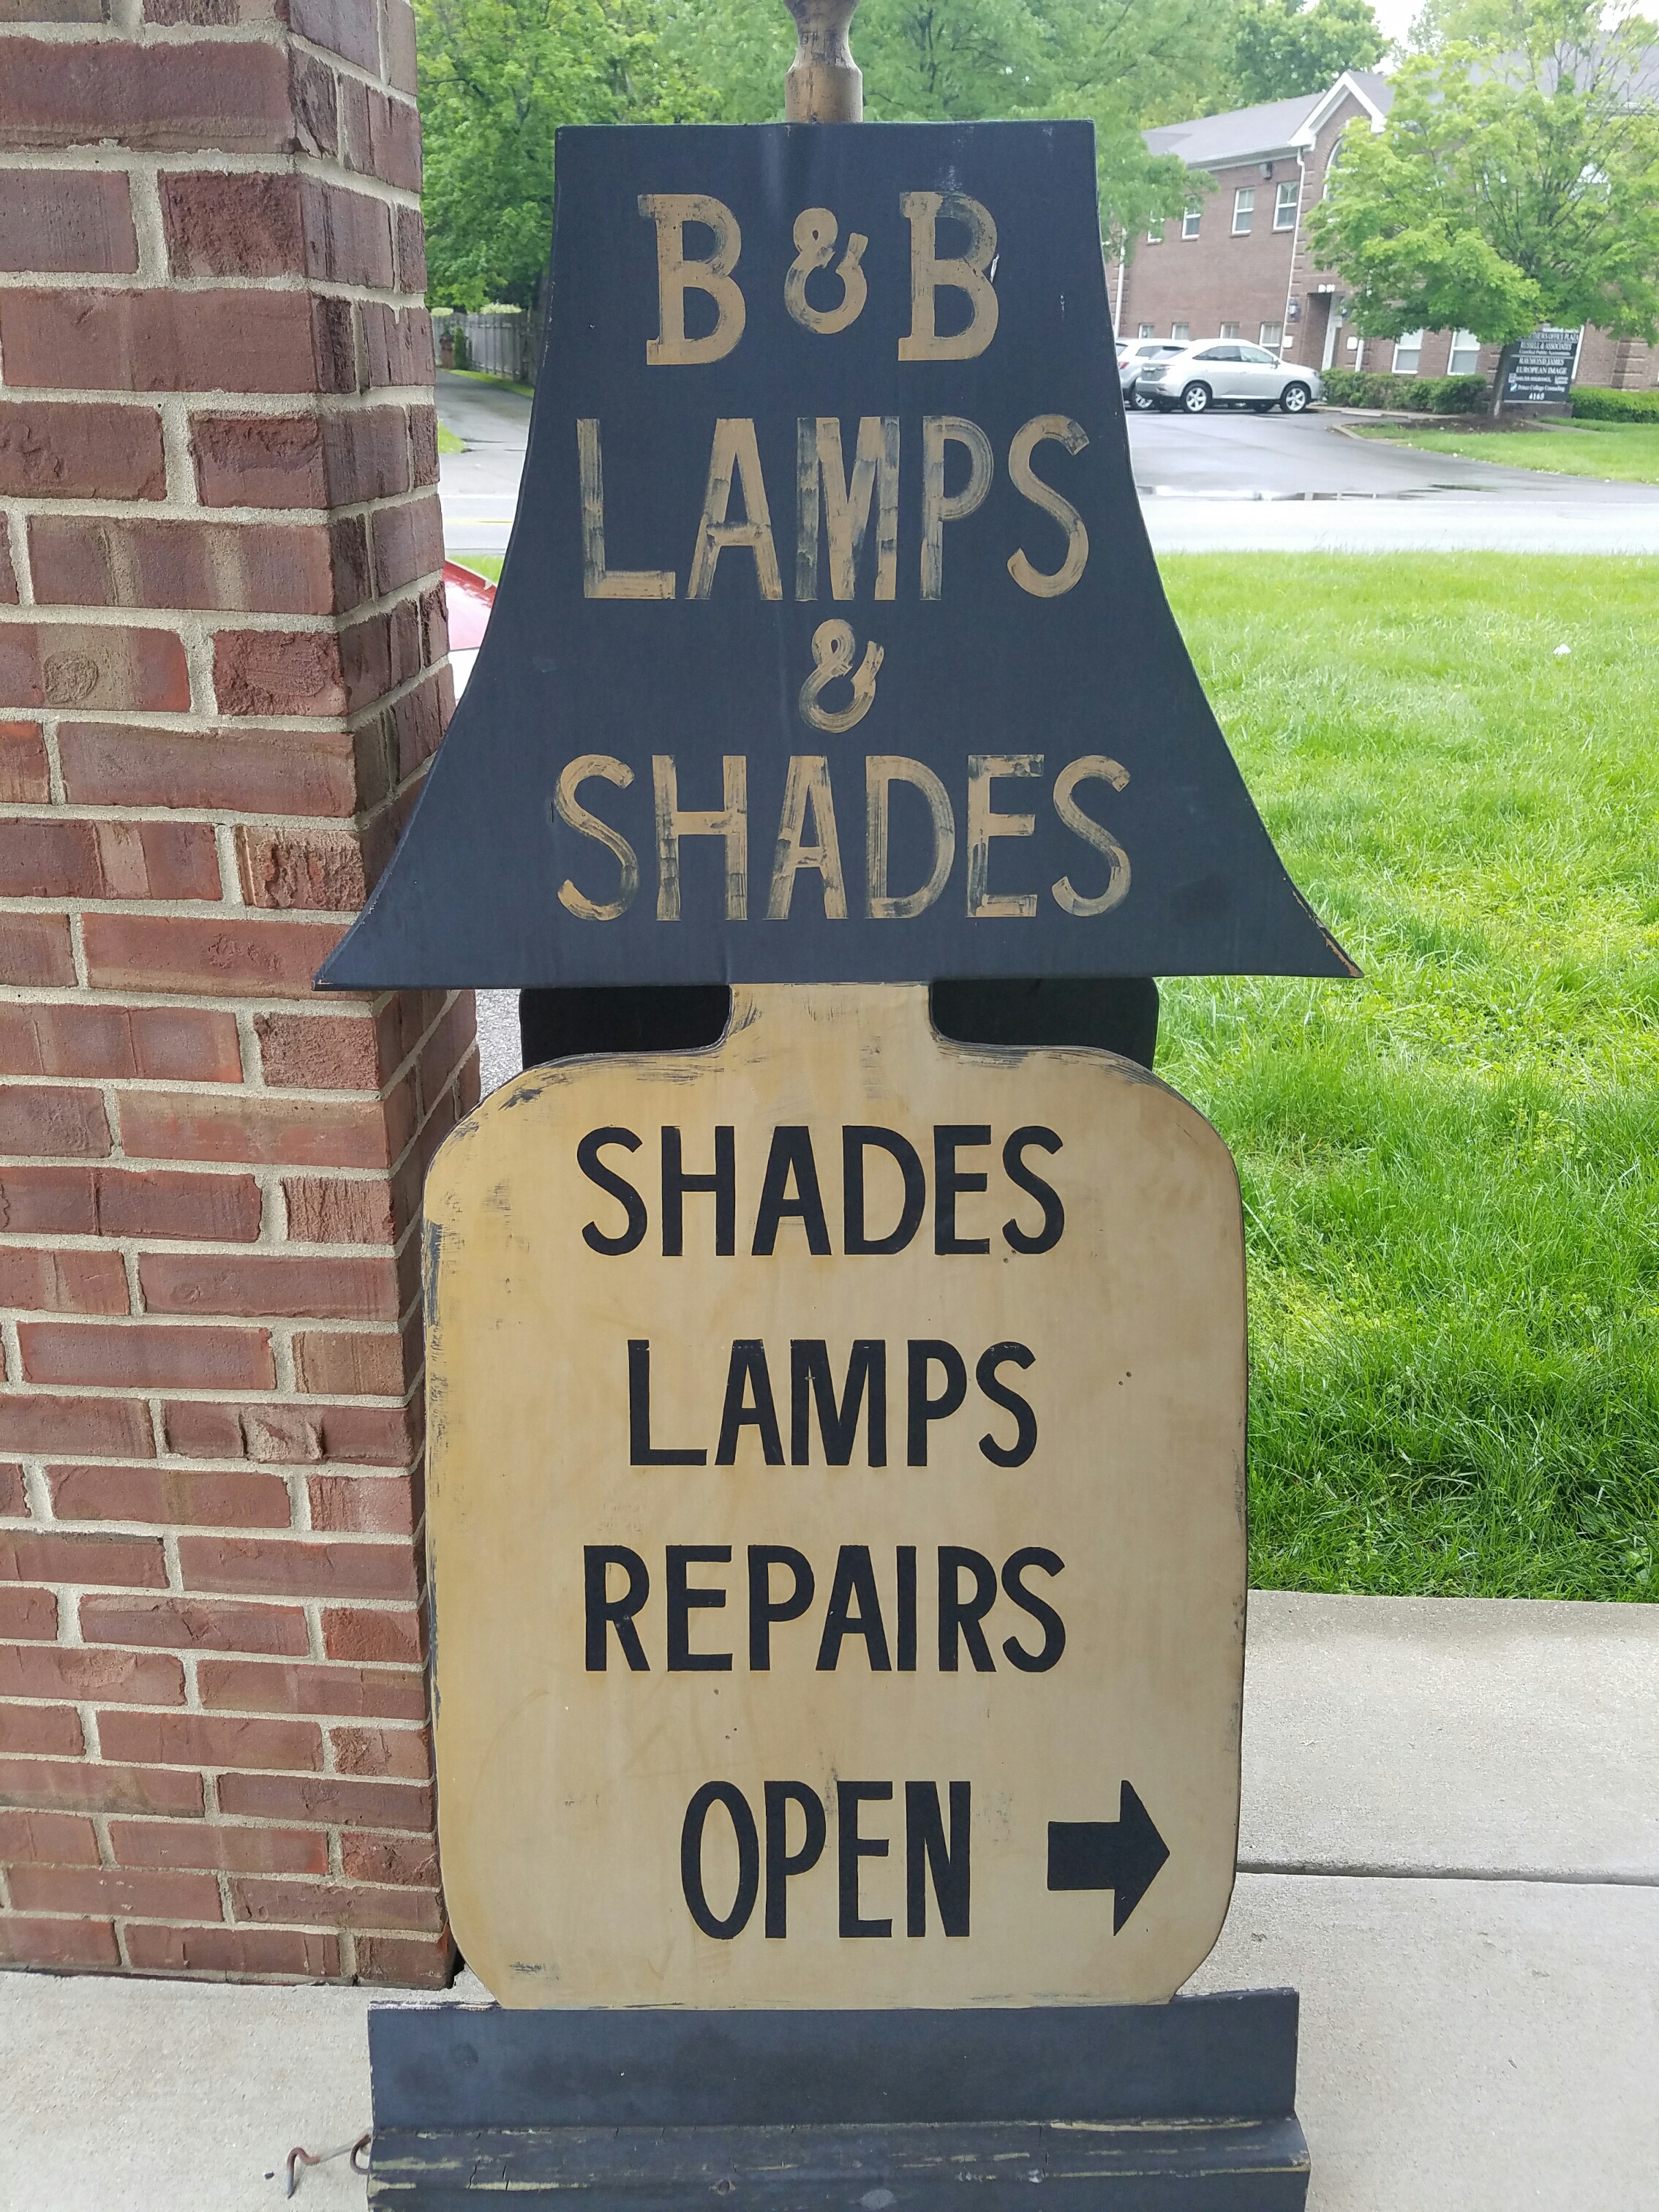 B & B Lamps and Shades